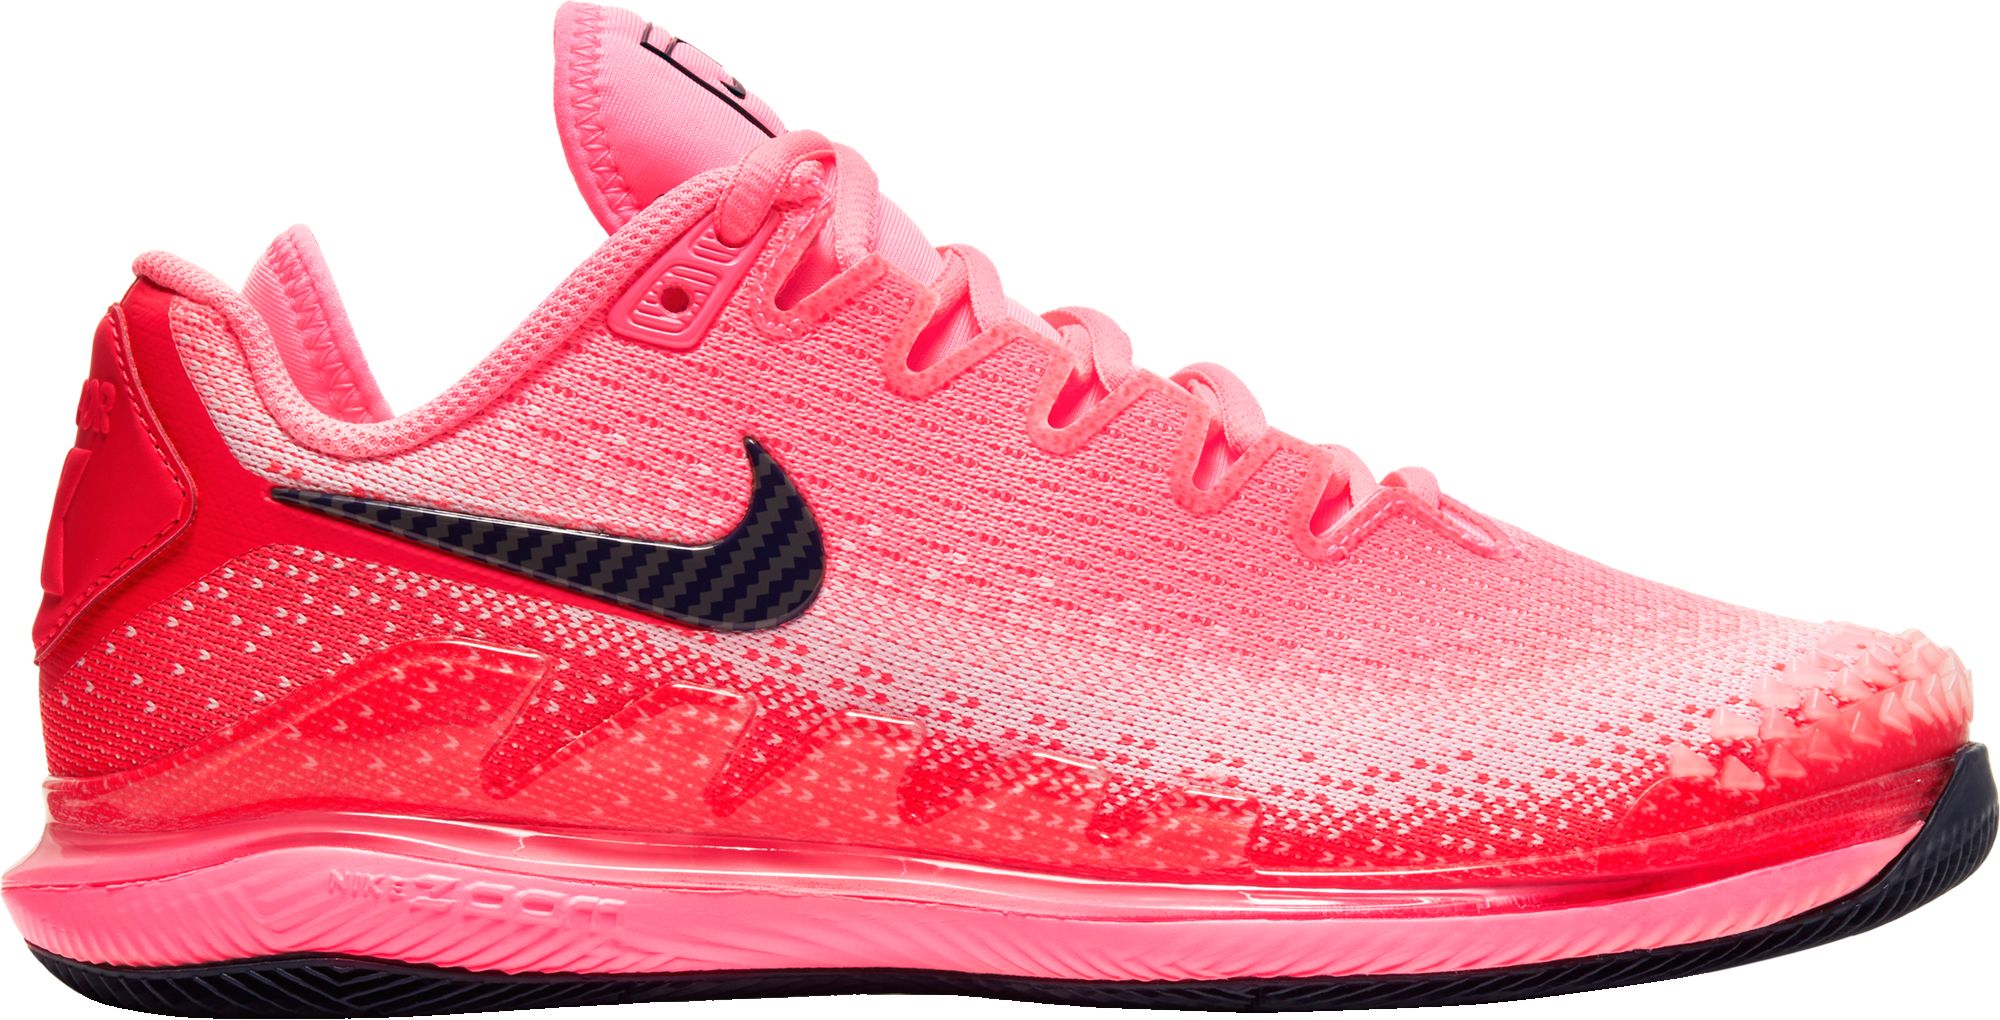 women's pink nike tennis shoes